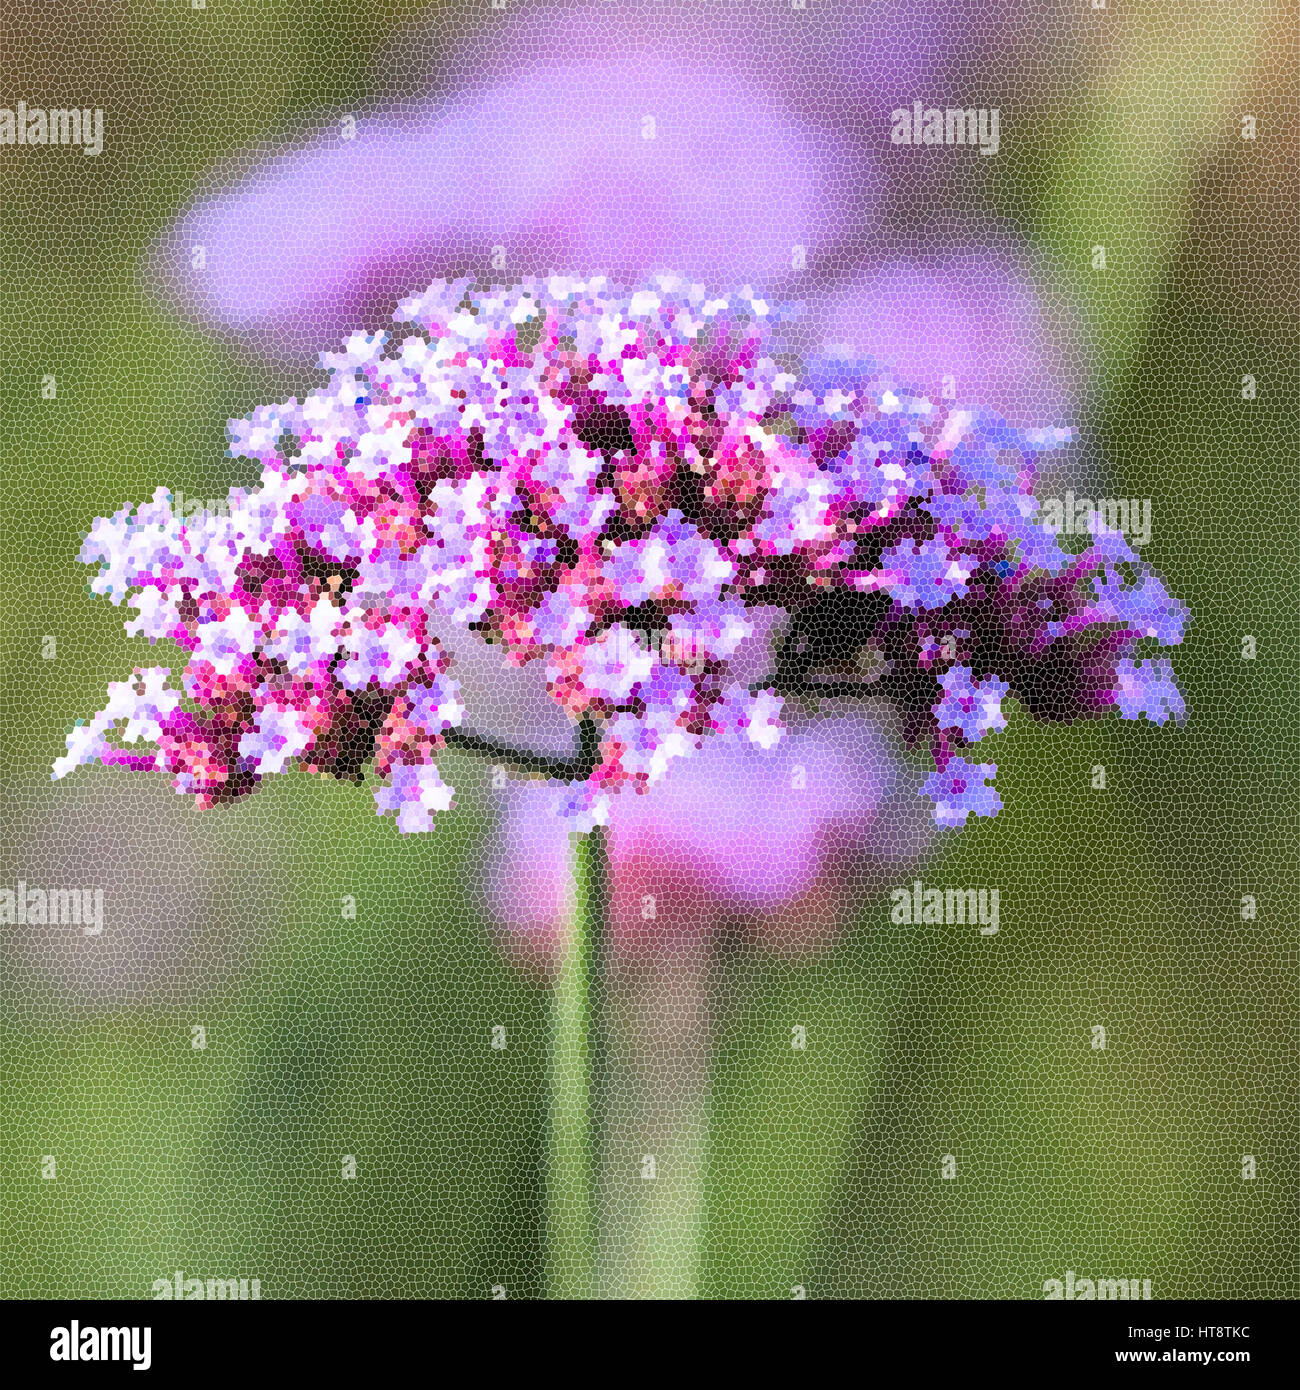 Leuchtend lila Blüten Nahaufnahme. Nachahmung des Mosaiks. Konzept von der schönen Natur, Sommer Hintergrund. Jahreszeiten, Gartenarbeit, Blumen zu bewundern Stockfoto